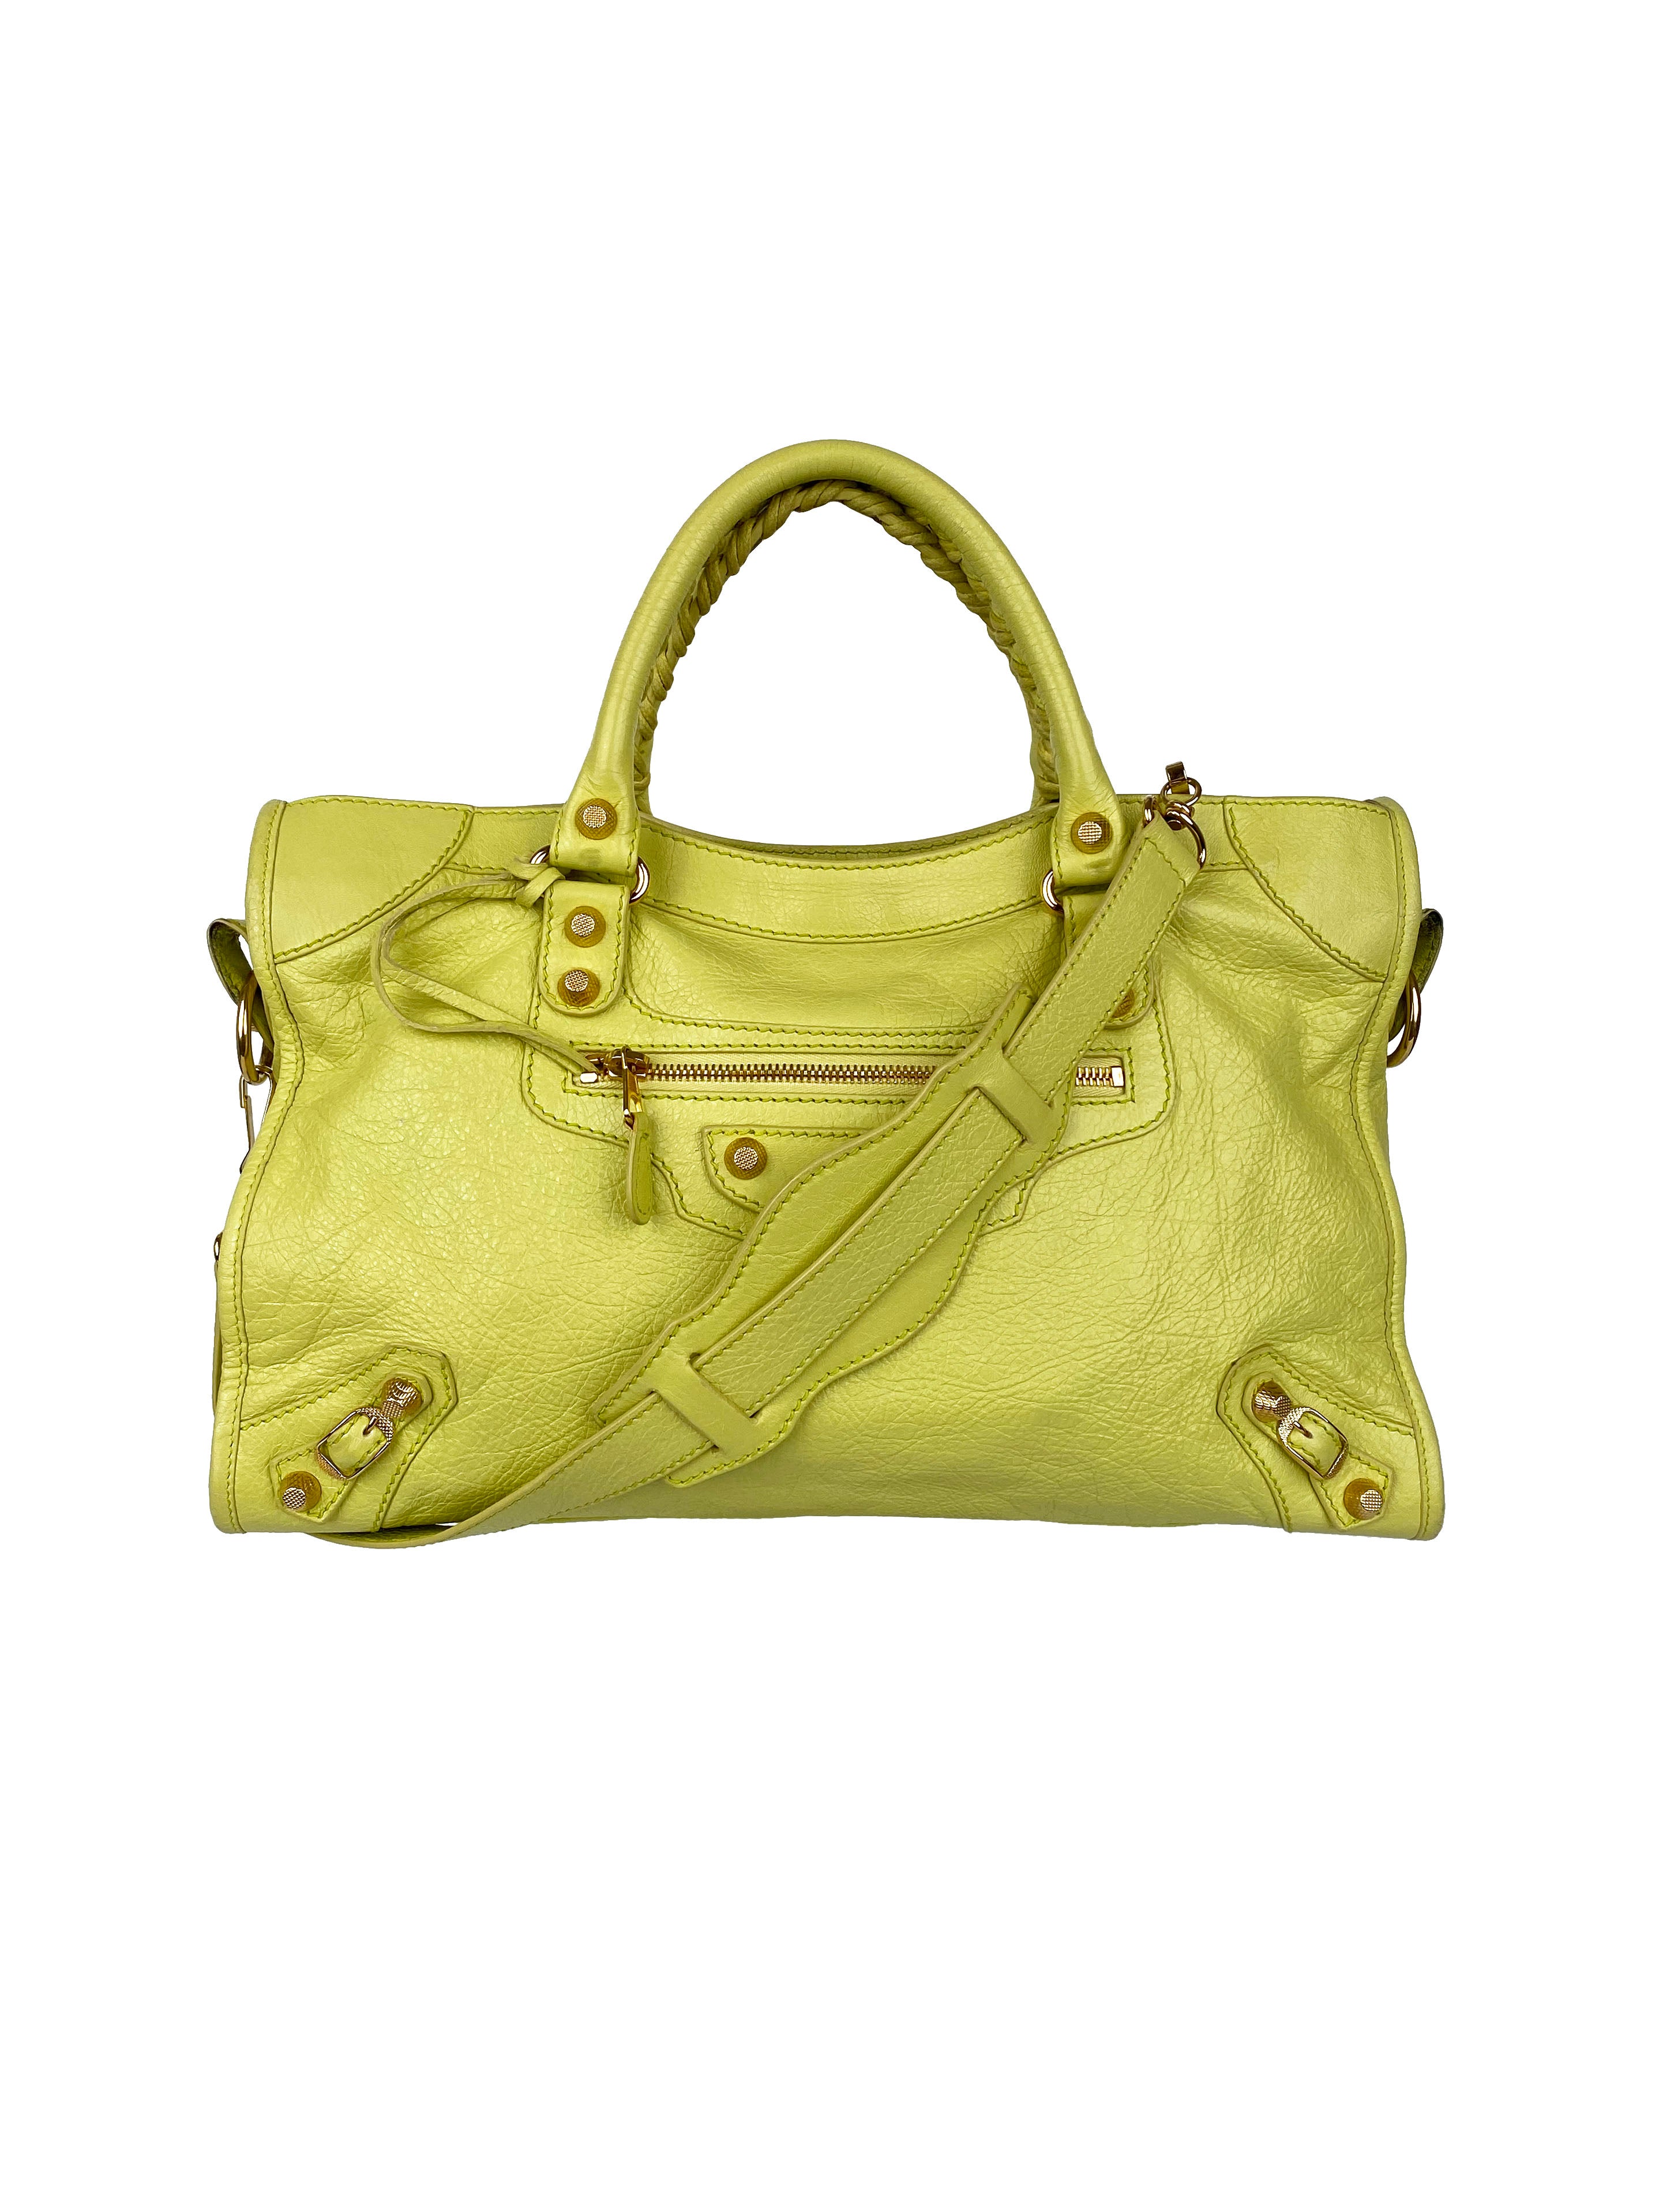 Balenciaga Pistachio Yellow Medium City Bag